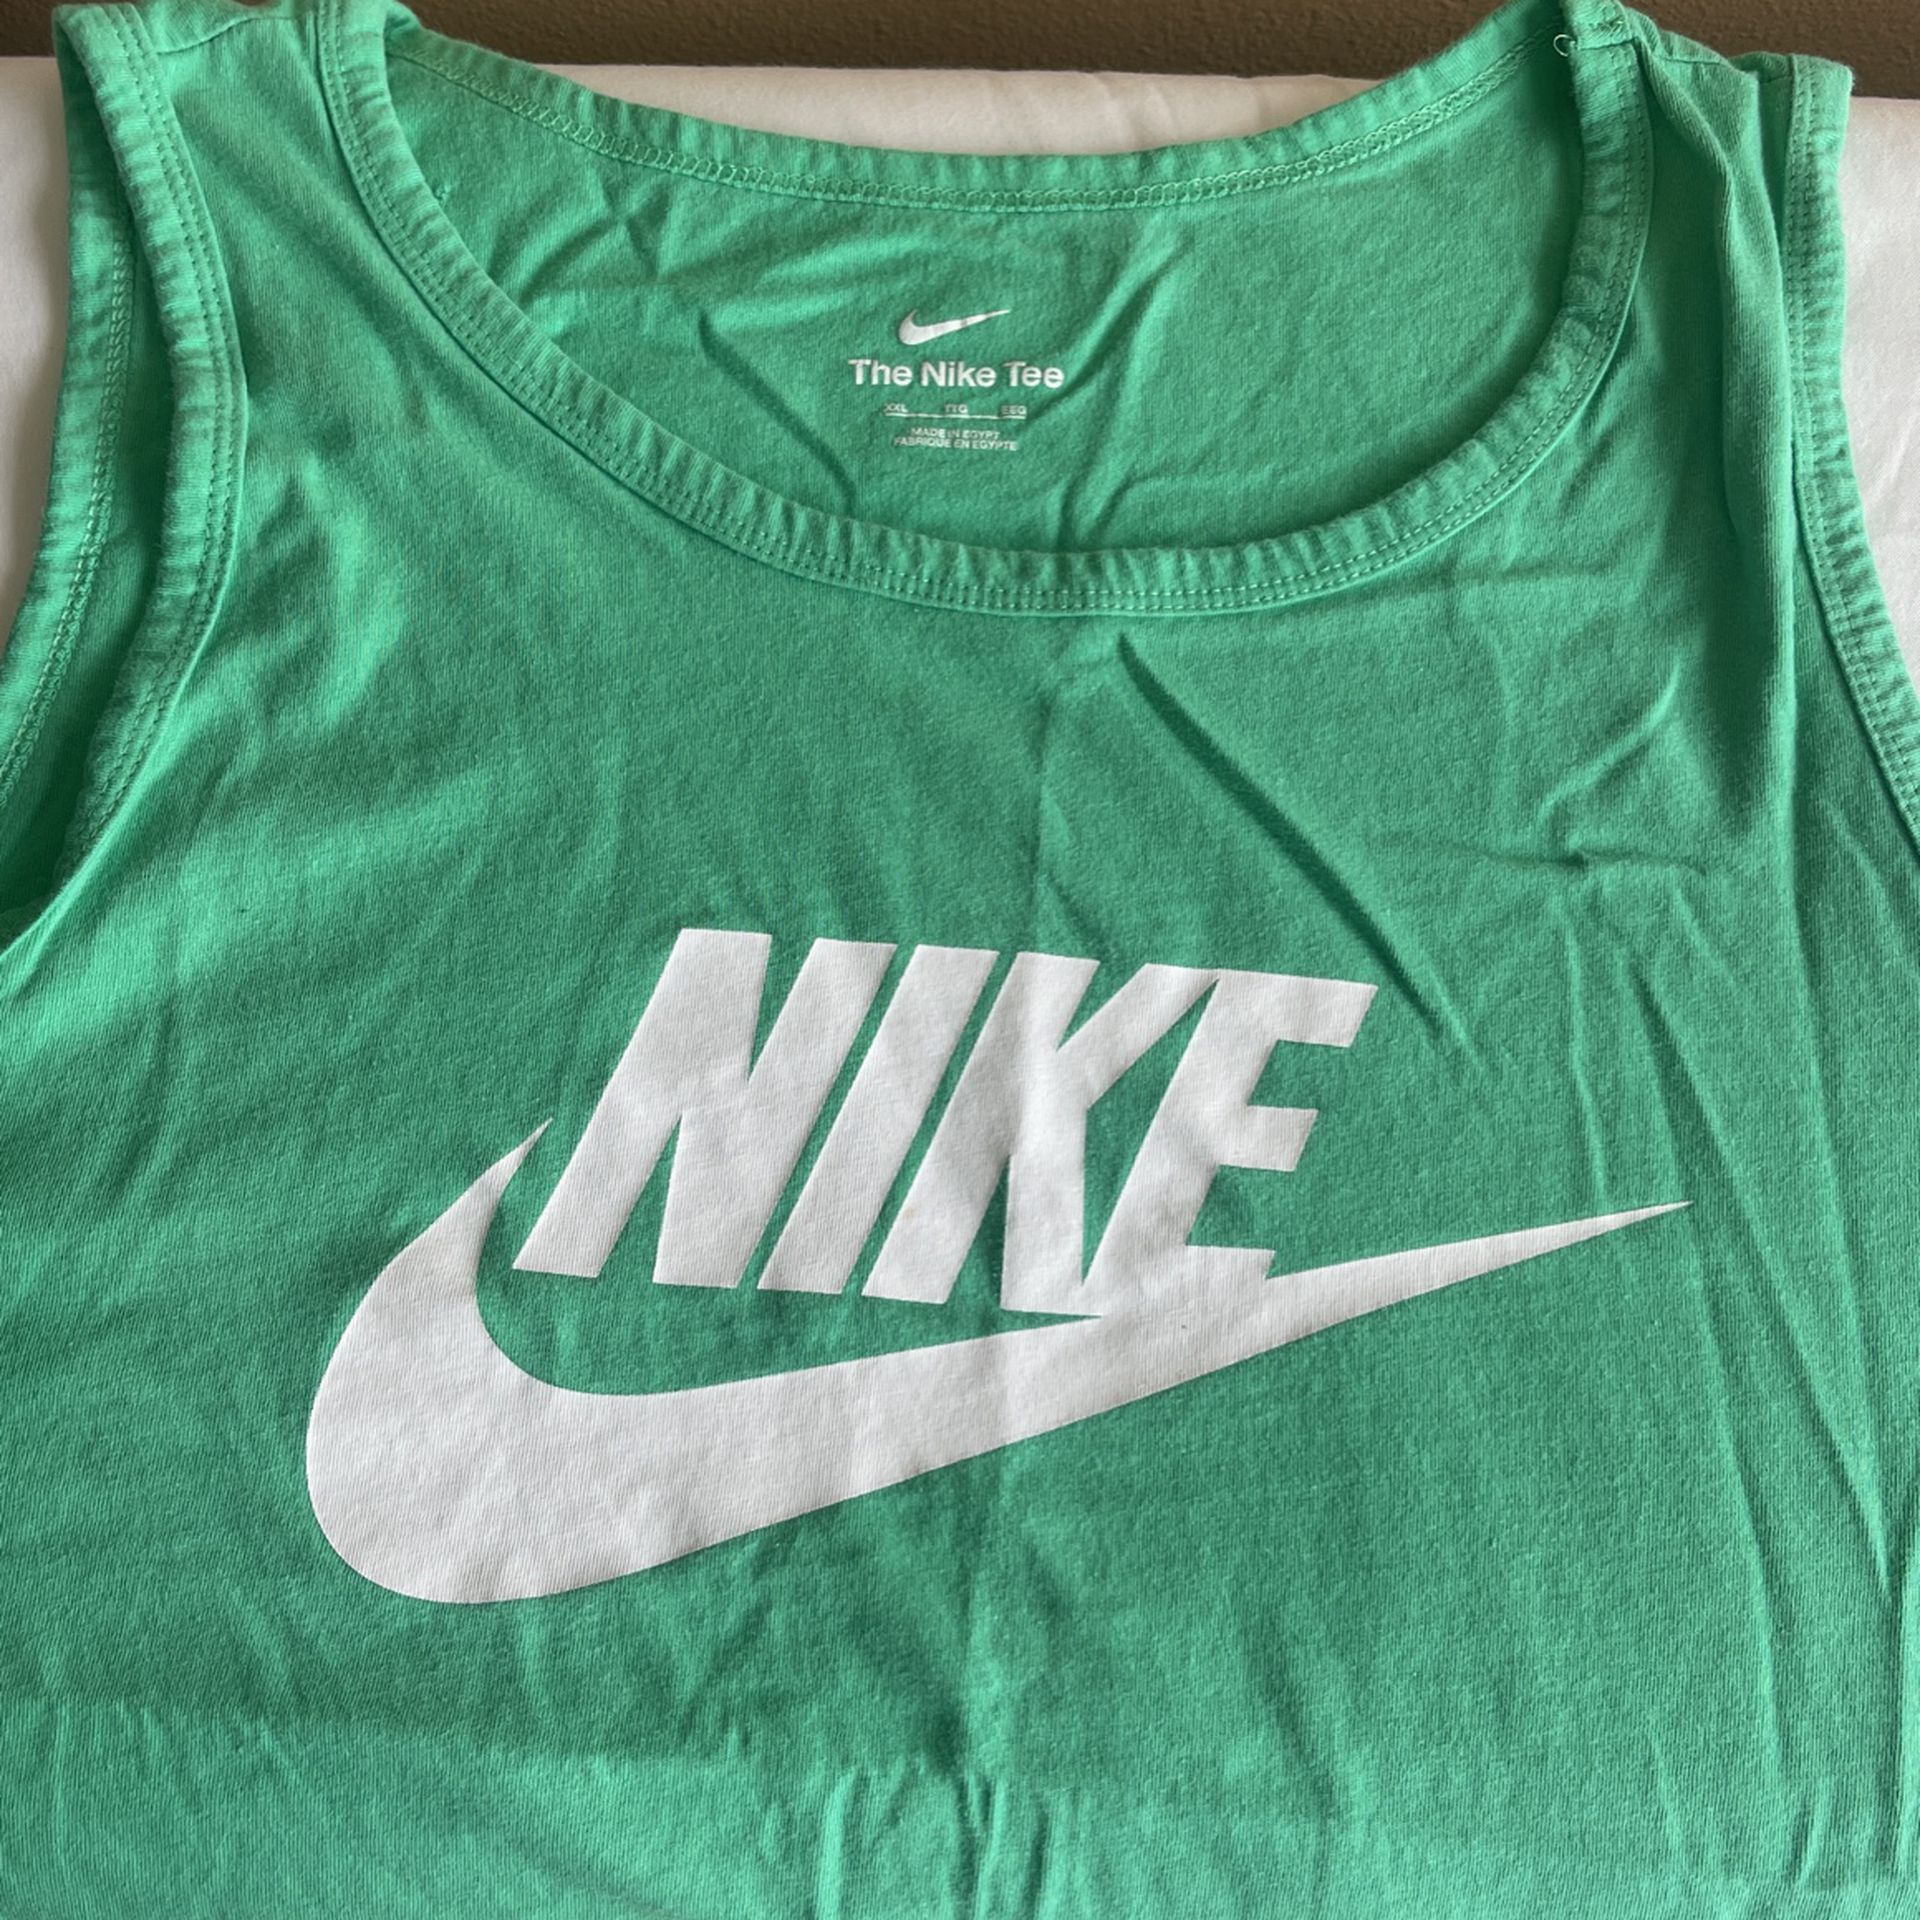 Nike Muscle Shirt $10